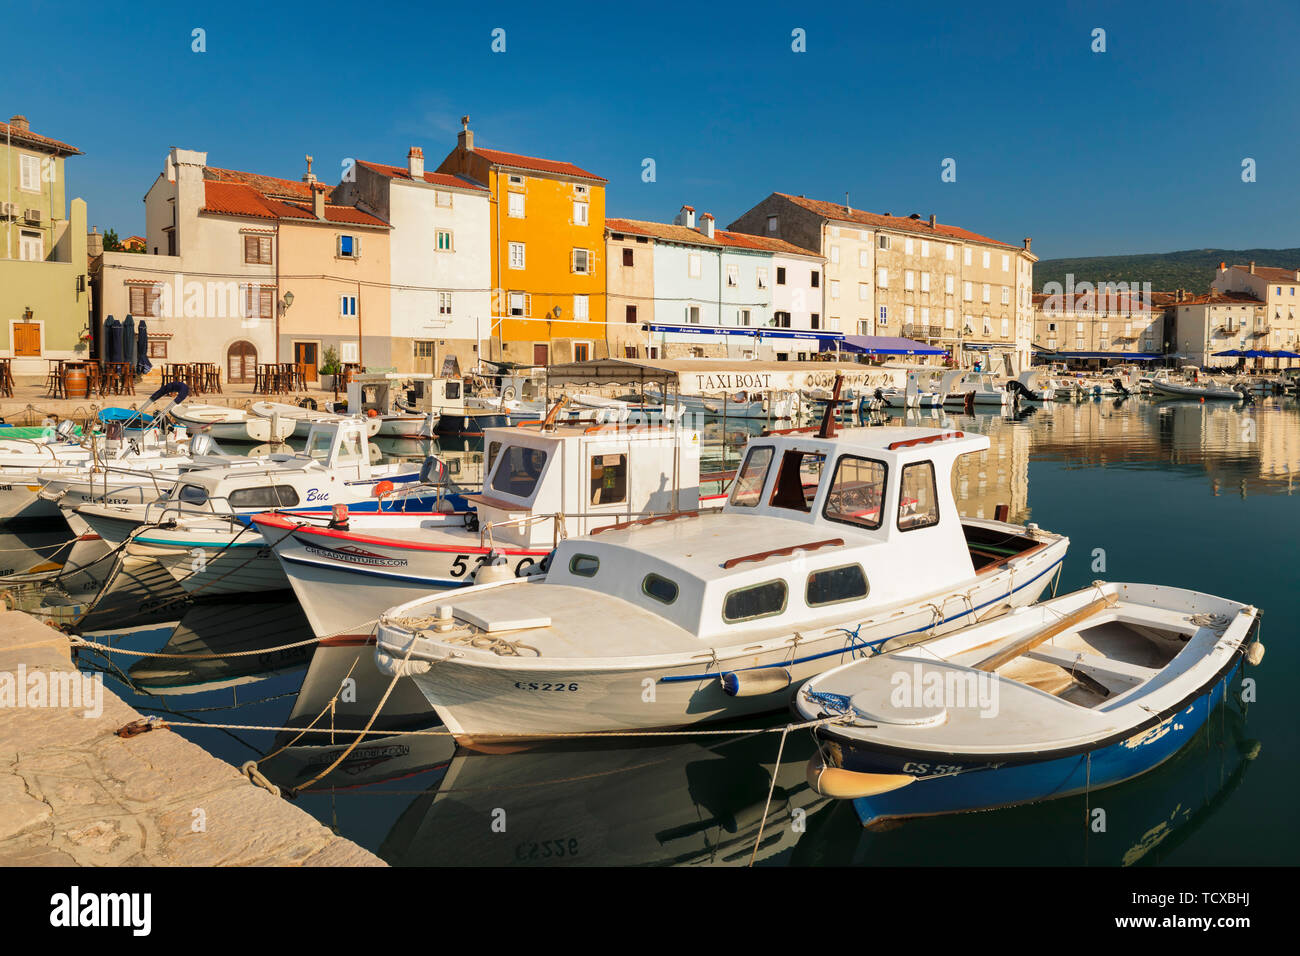 Les bateaux de pêche dans le port, de la ville de Cres, Cres, île du golfe de Kvarner, Croatie, Europe Banque D'Images